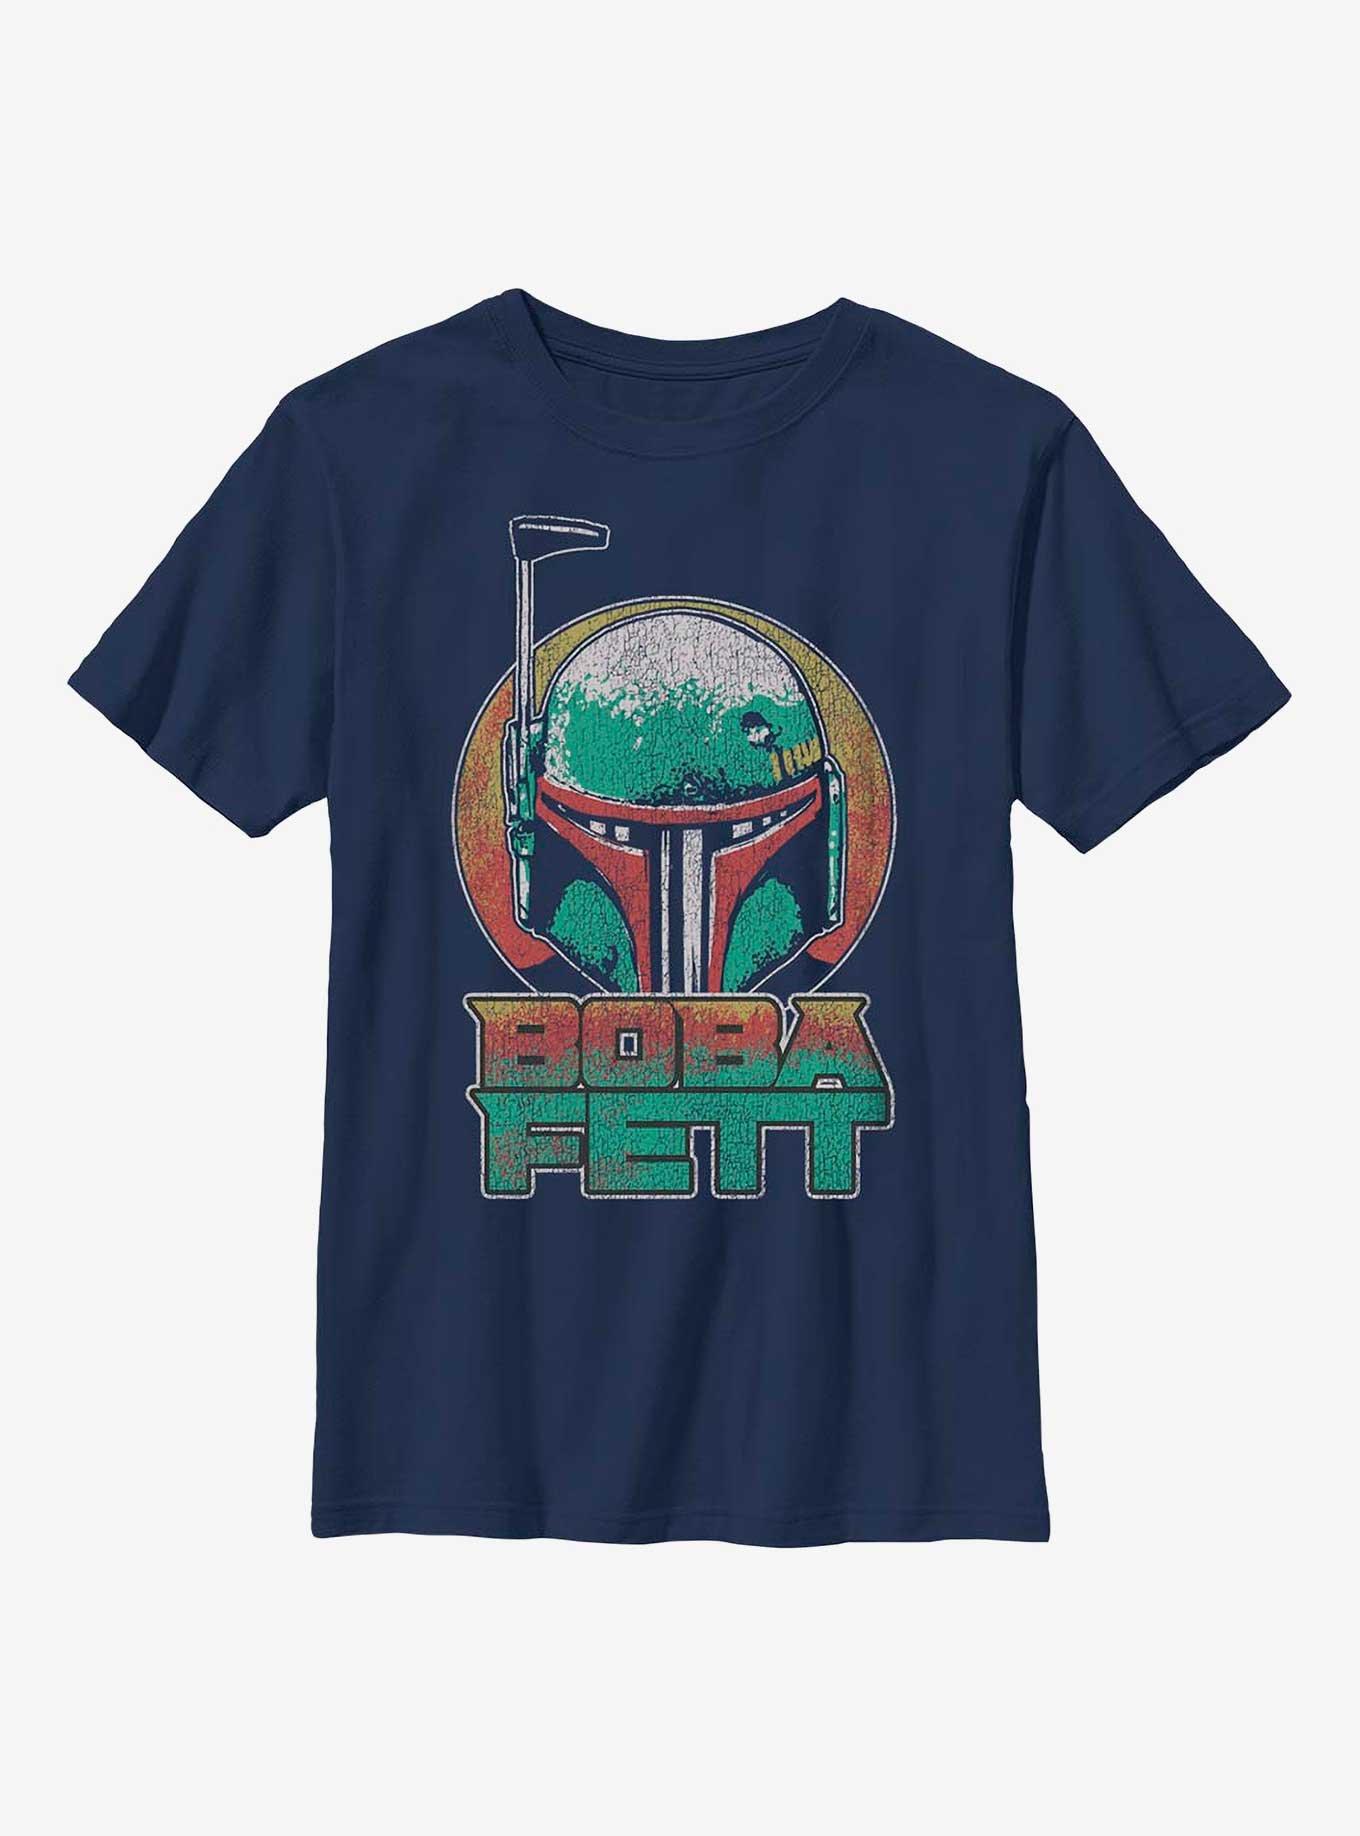 Star Wars Boba Fett Circle Youth T-Shirt, NAVY, hi-res